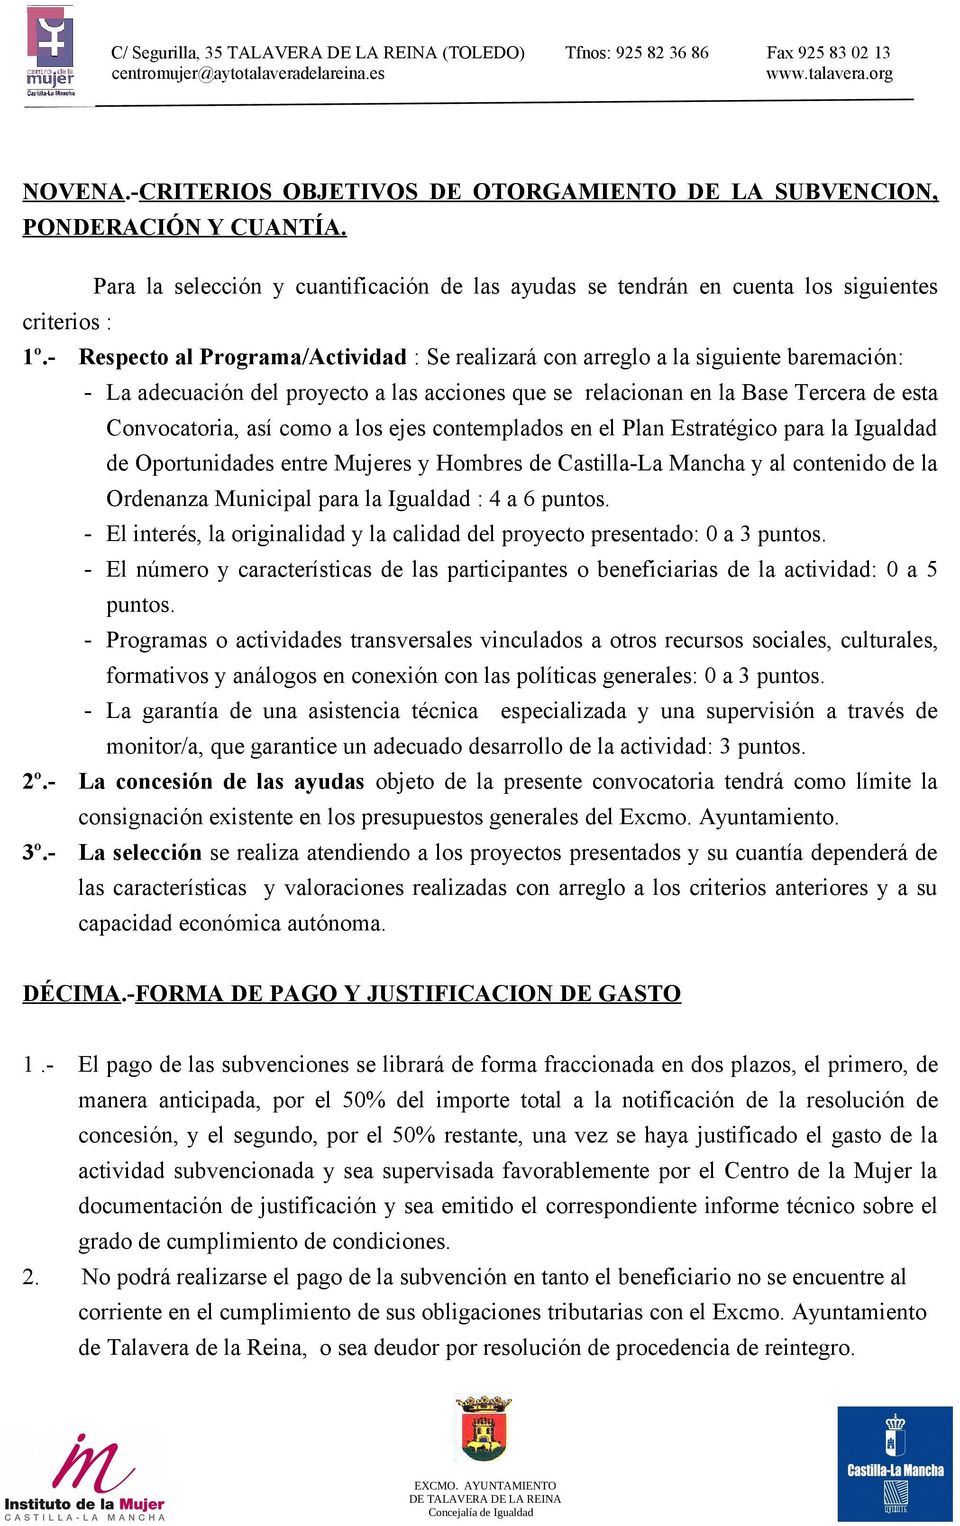 a los ejes contemplados en el Plan Estratégico para la Igualdad de Oportunidades entre Mujeres y Hombres de Castilla-La Mancha y al contenido de la Ordenanza Municipal para la Igualdad : 4 a 6 puntos.